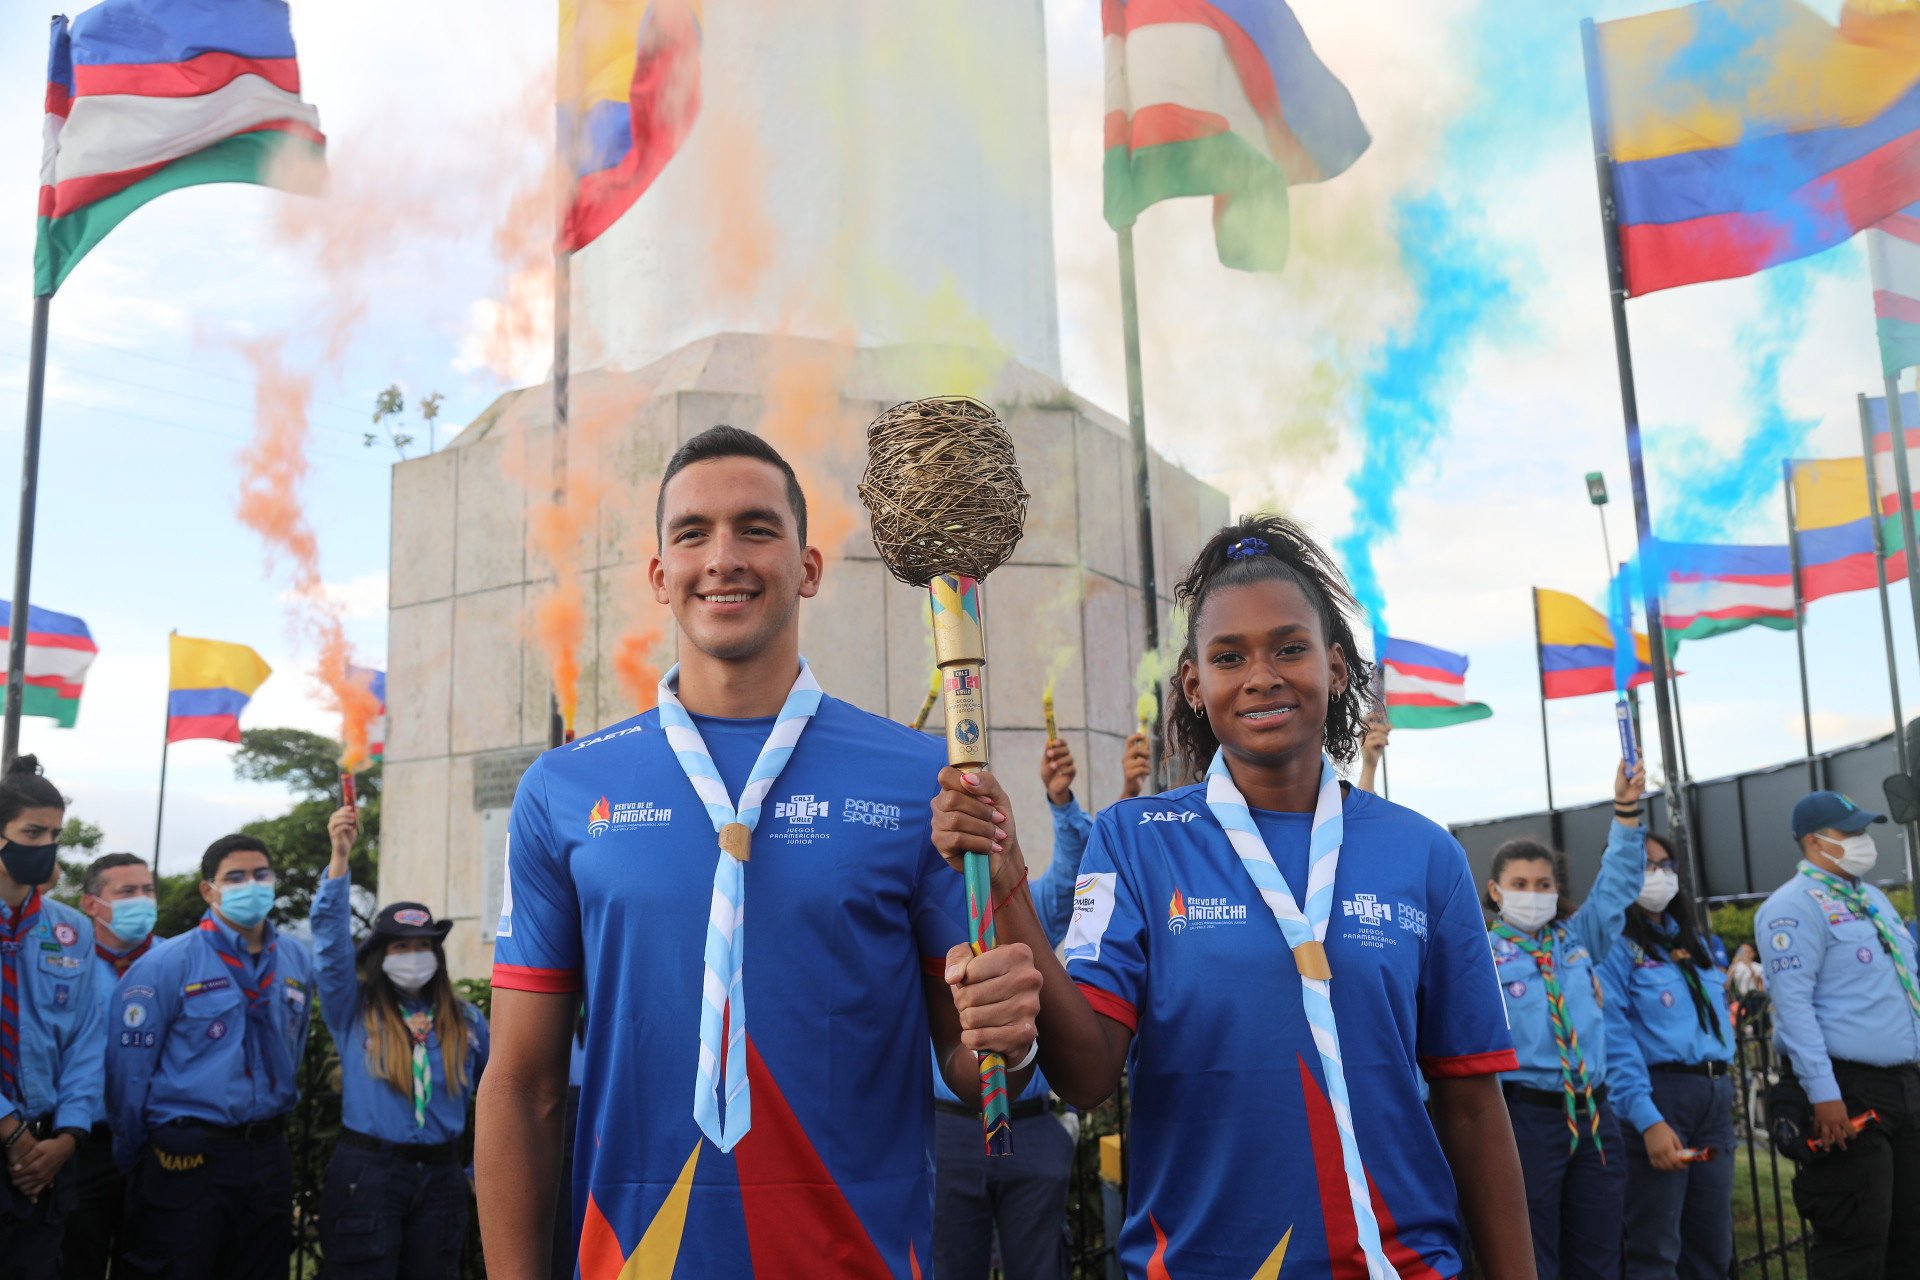 Cali 2021 Torch Relay begins as inaugural Junior Pan American Games near